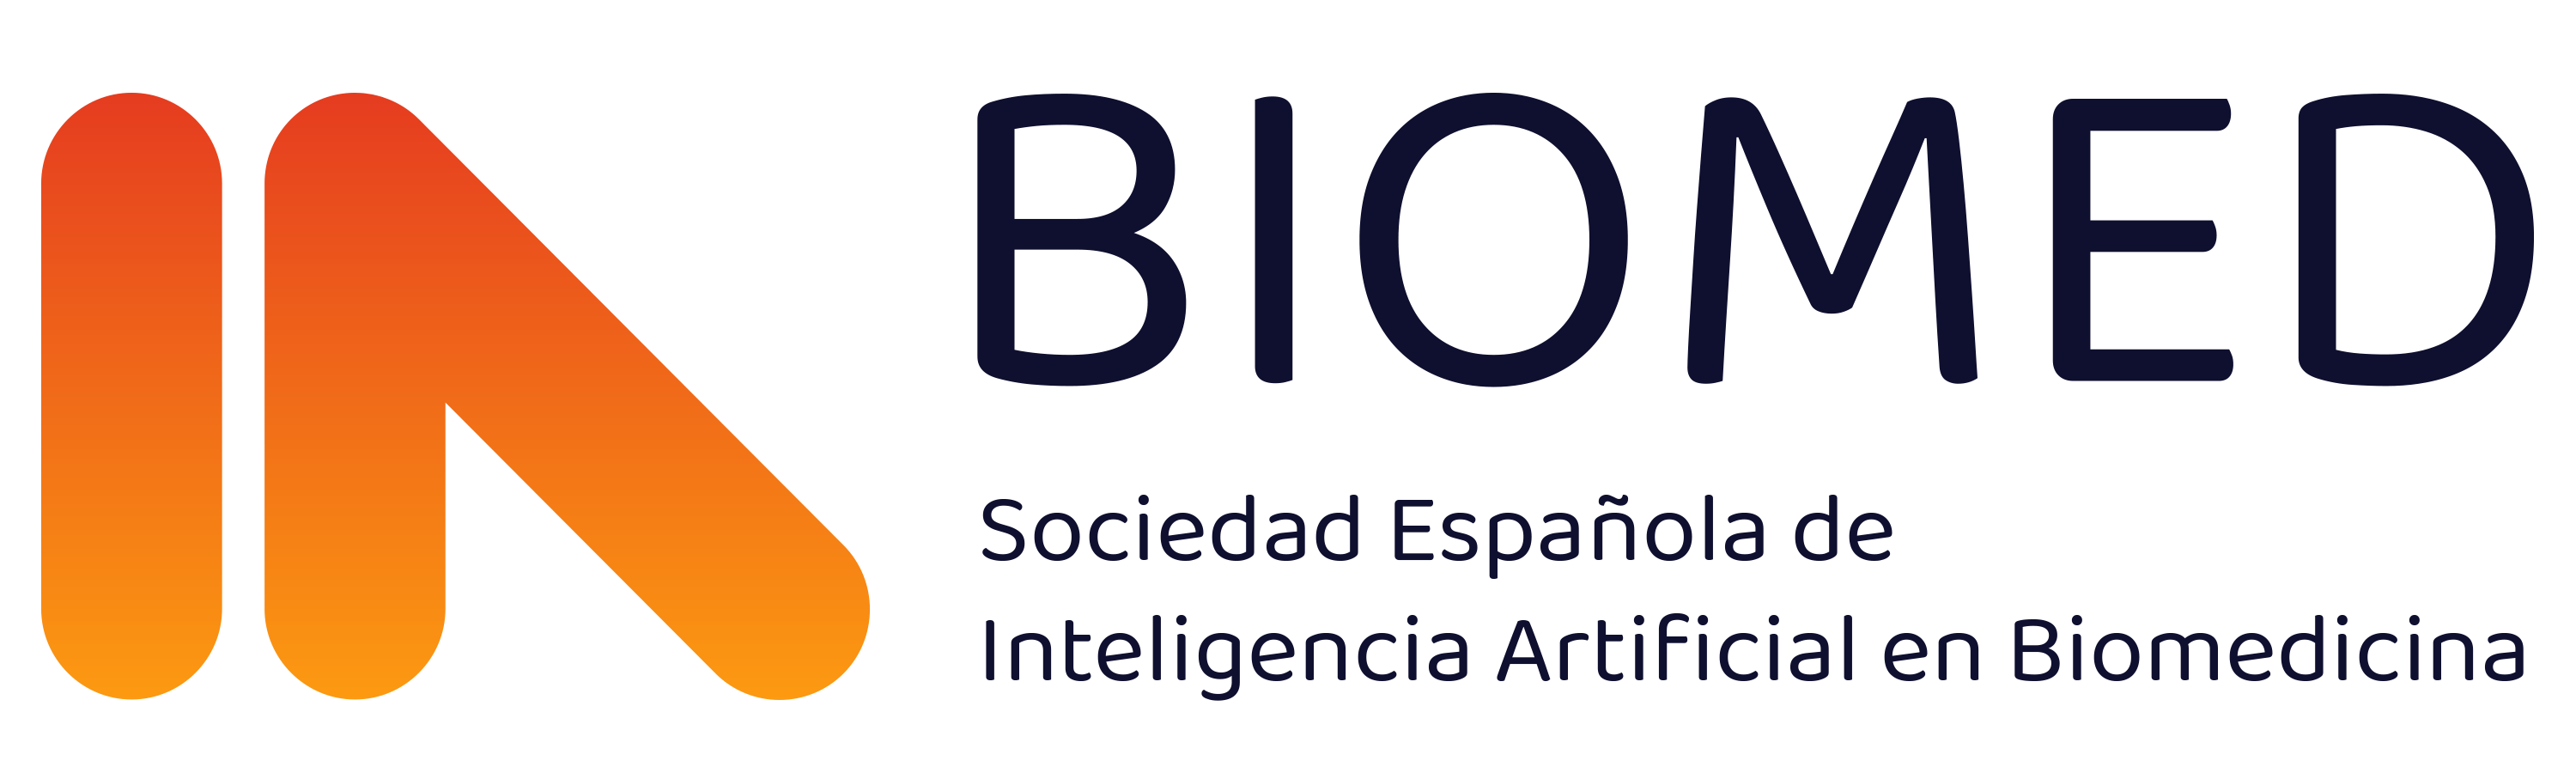 Sociedad Española de Inteligencia Artificial en Biomedicina – IABiomed